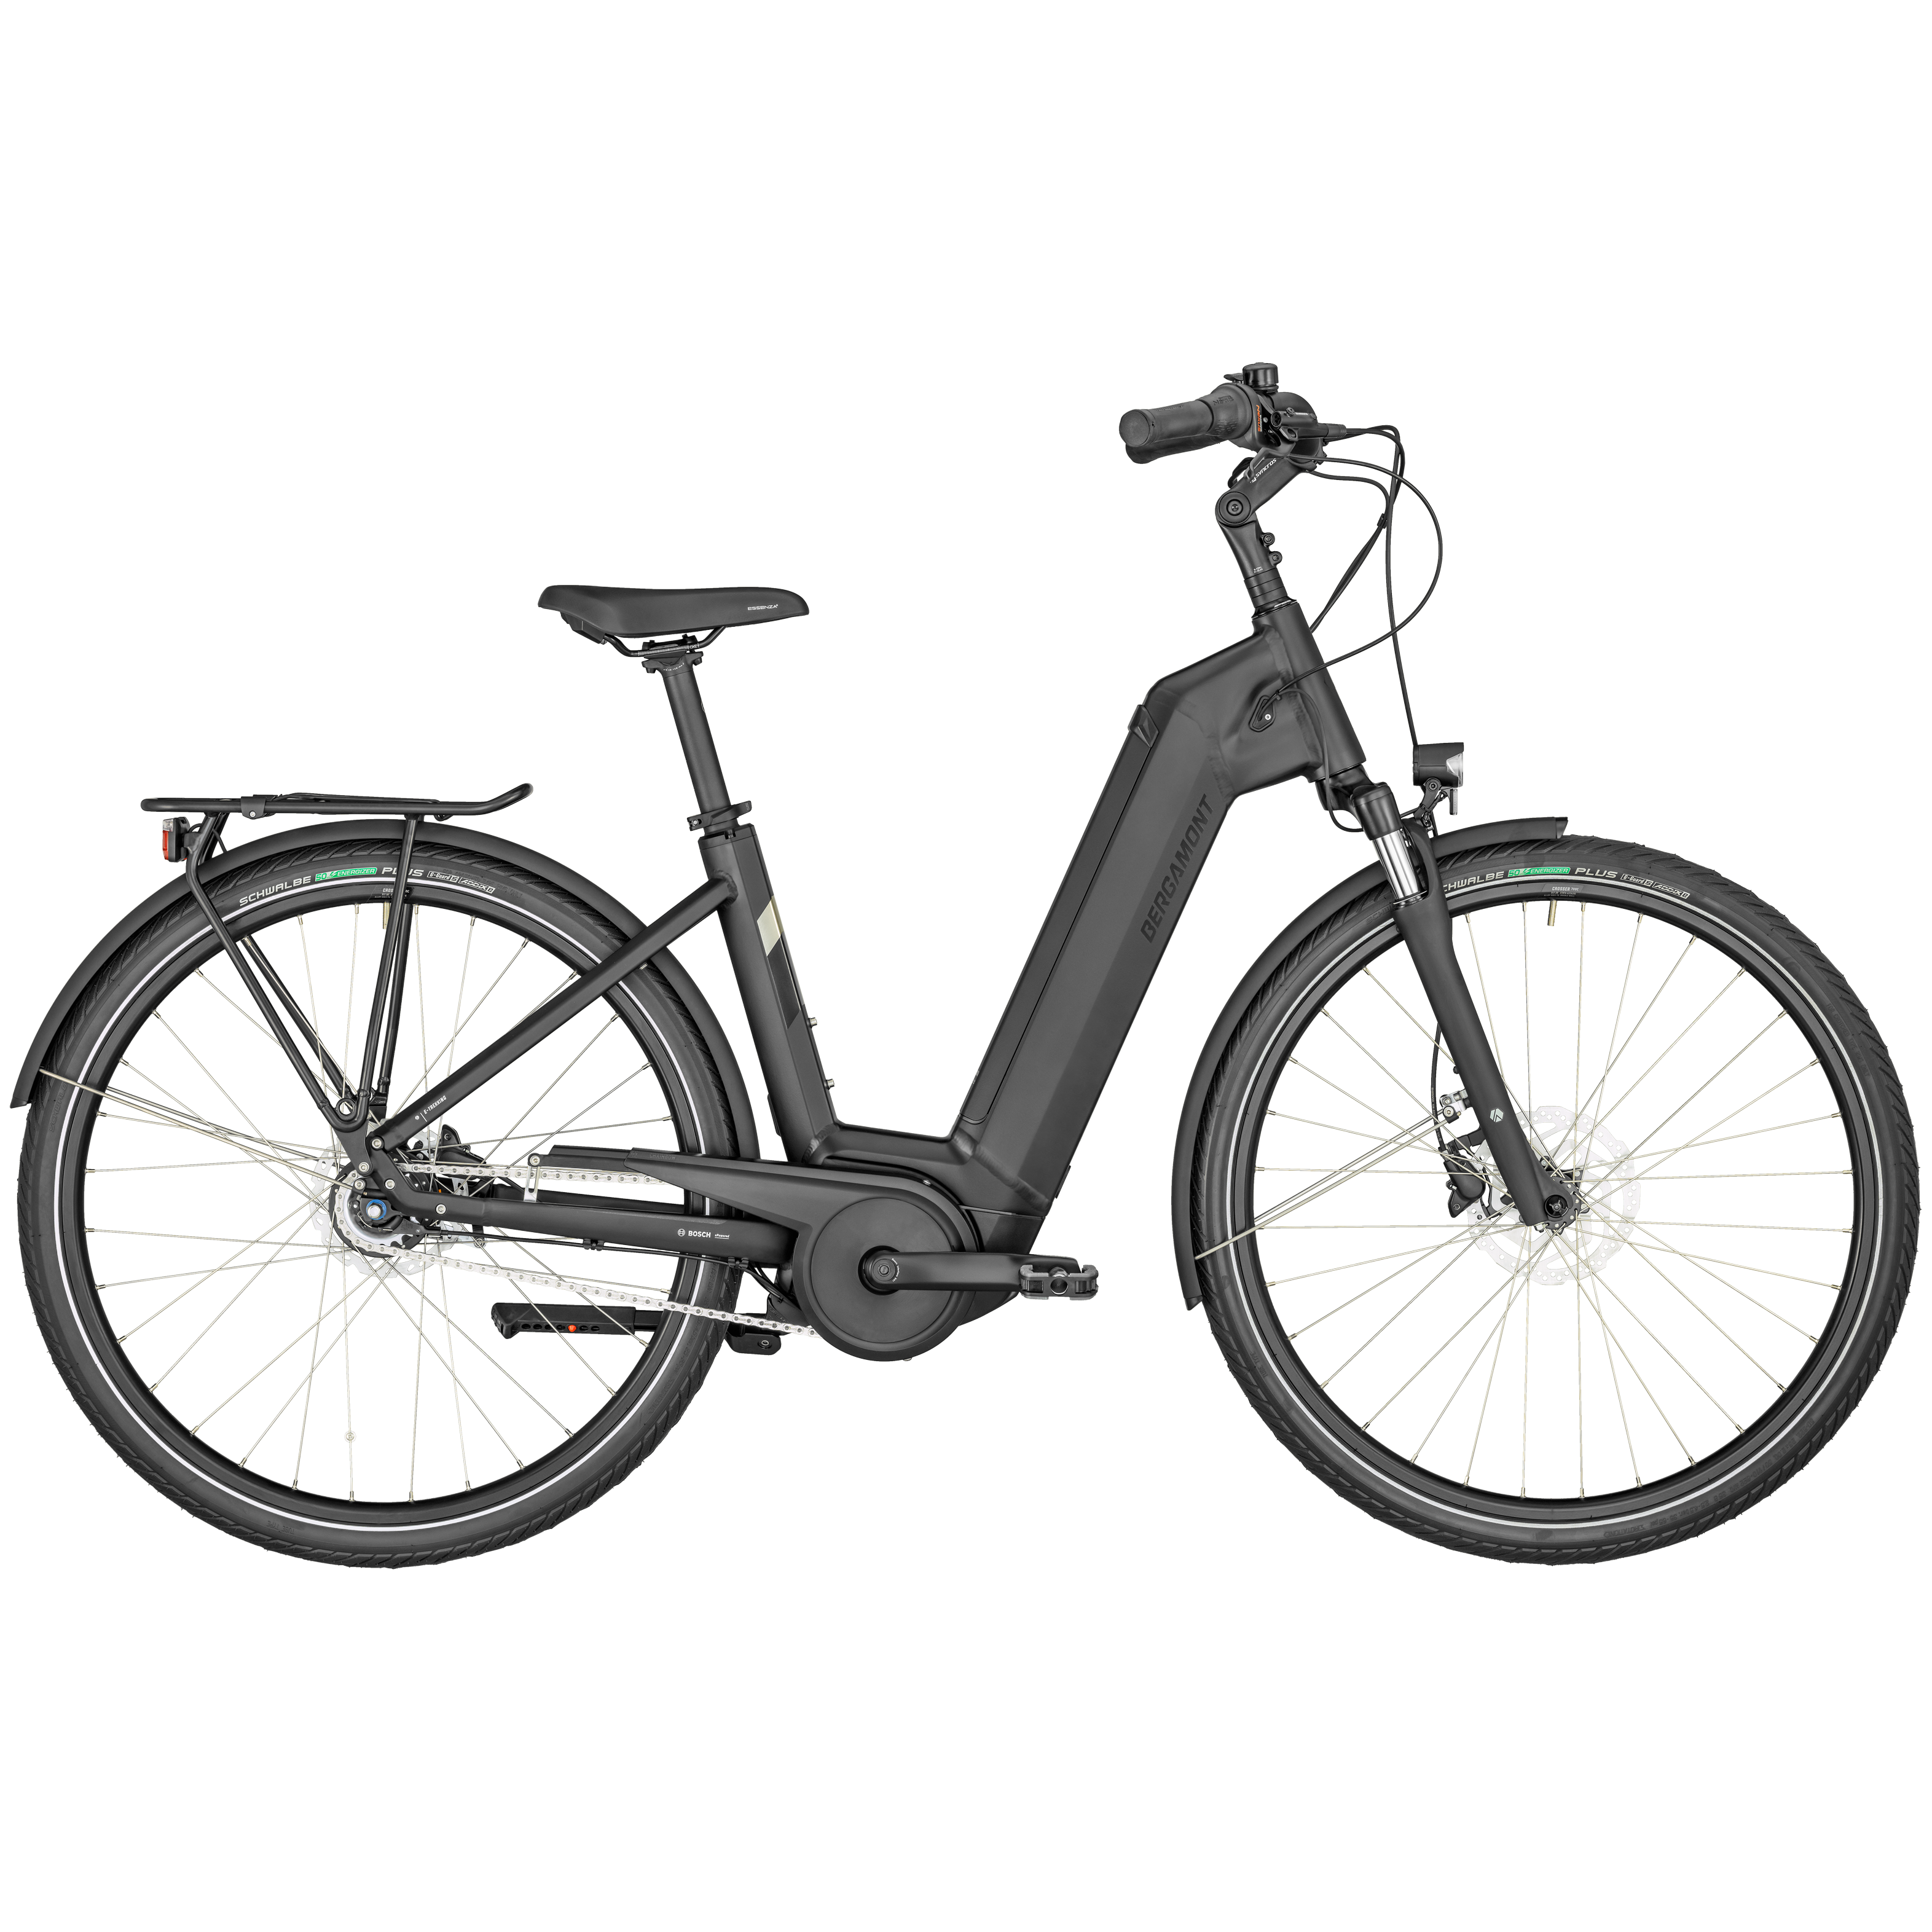 Bergamont E-Horizon N8, City E-Bike mit Rücktrittbremse und tiefem Einstieg. Farbe: mattschwarz